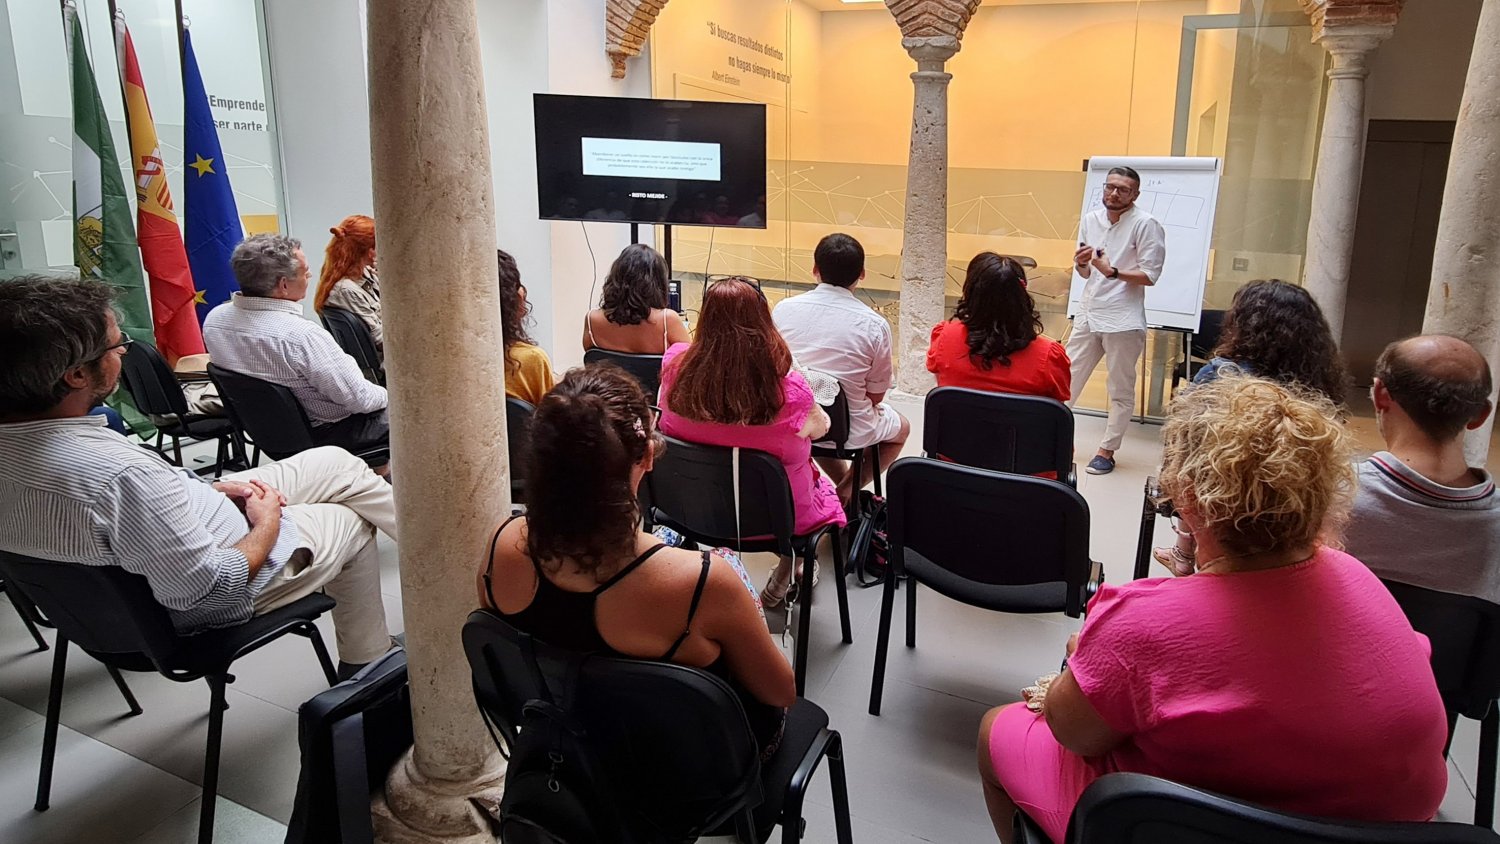 La quincena de proyectos de La Aceleradora de Marbella llega al ecuador con más de 40 horas de formación